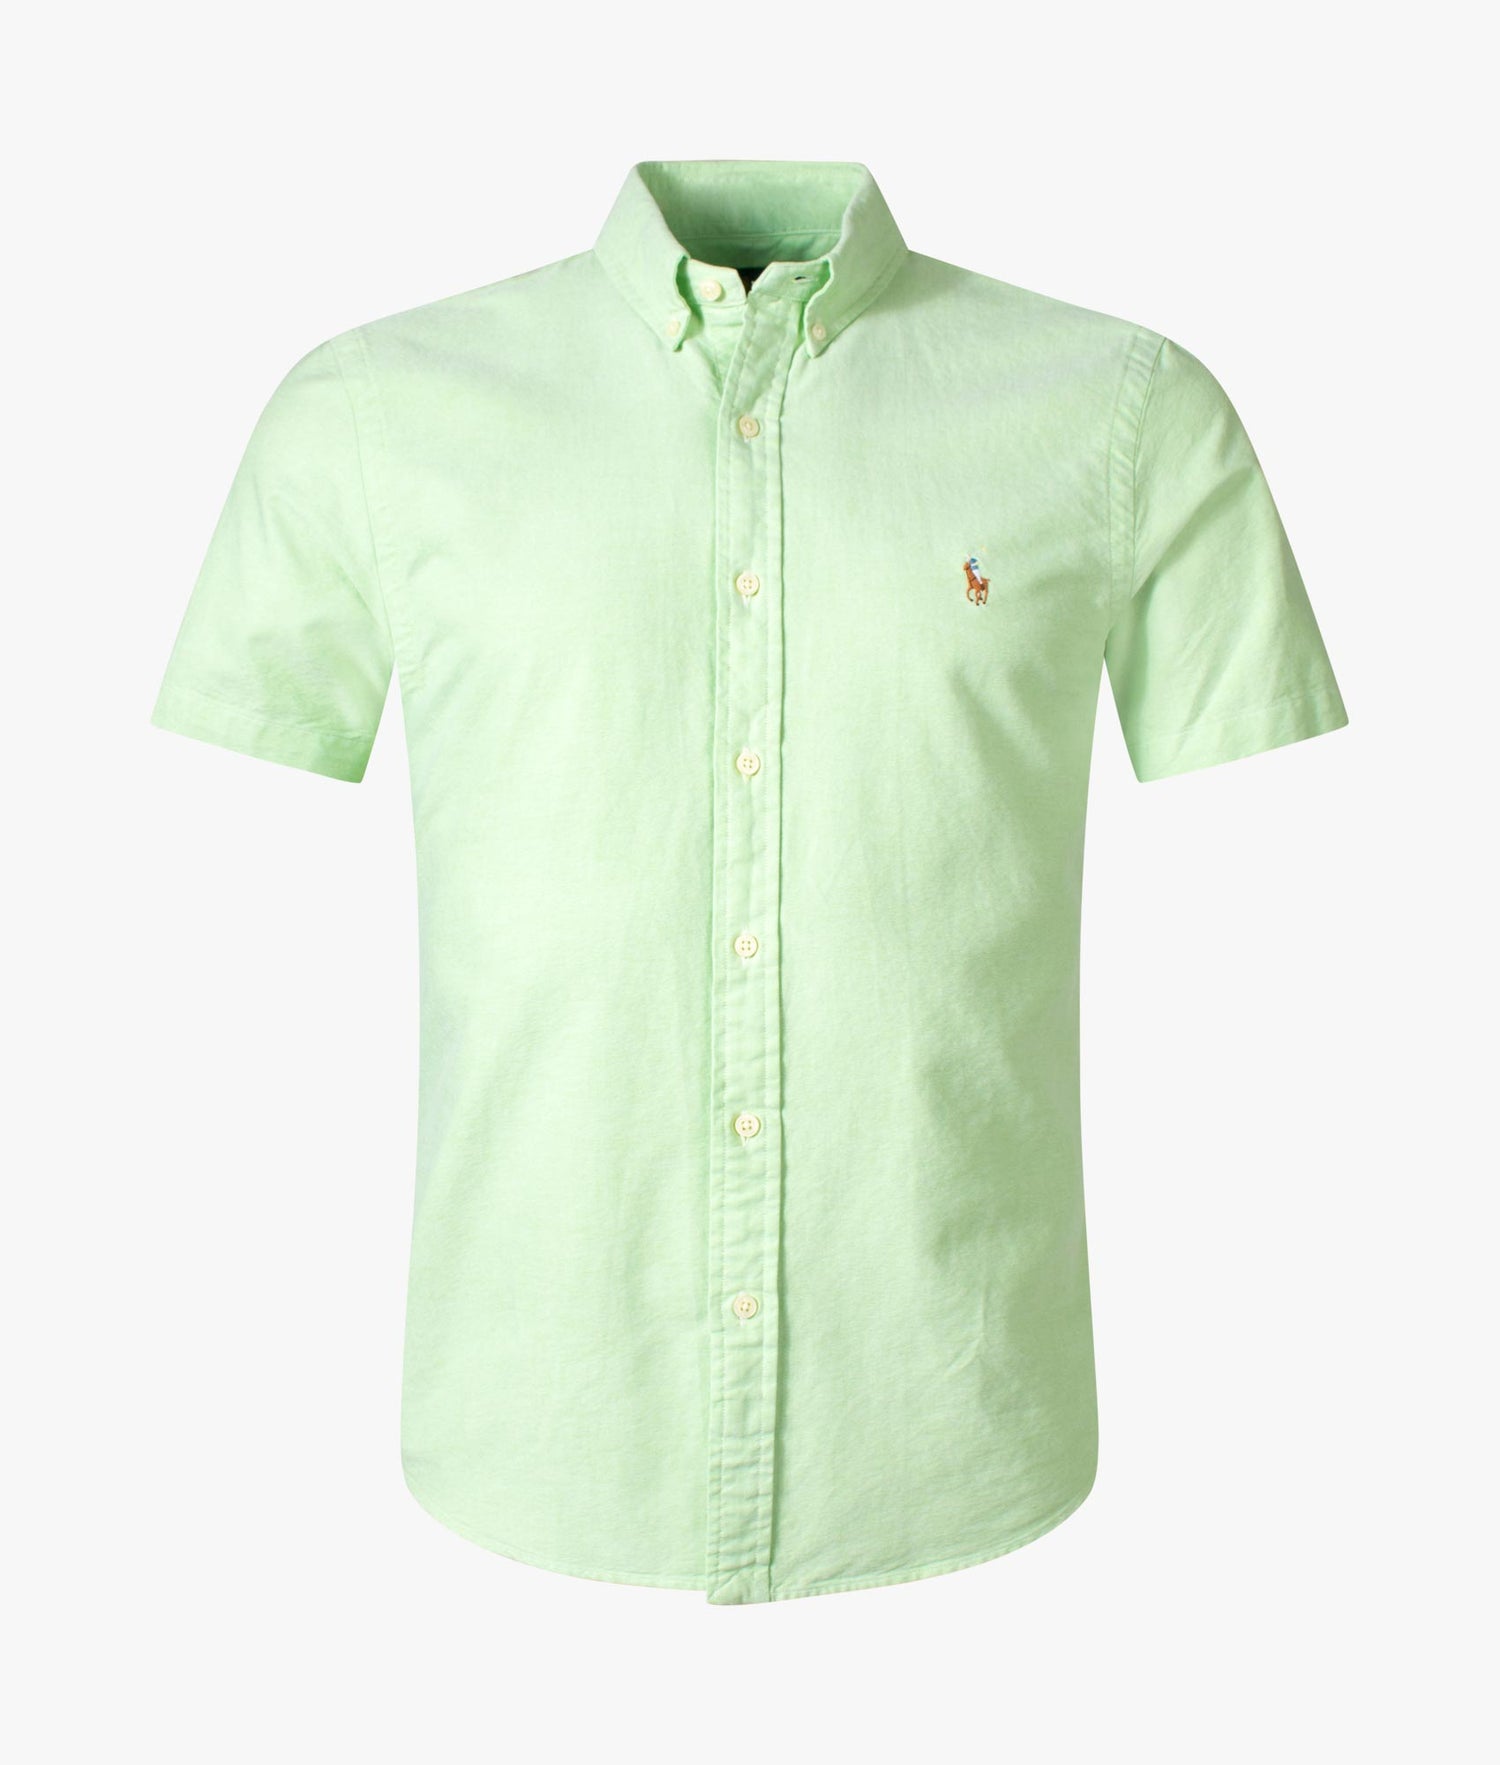 Ralph Lauren Shirt Men's Sz 3XB Short Sleeve Button Down Green W Blue Pony  🔥